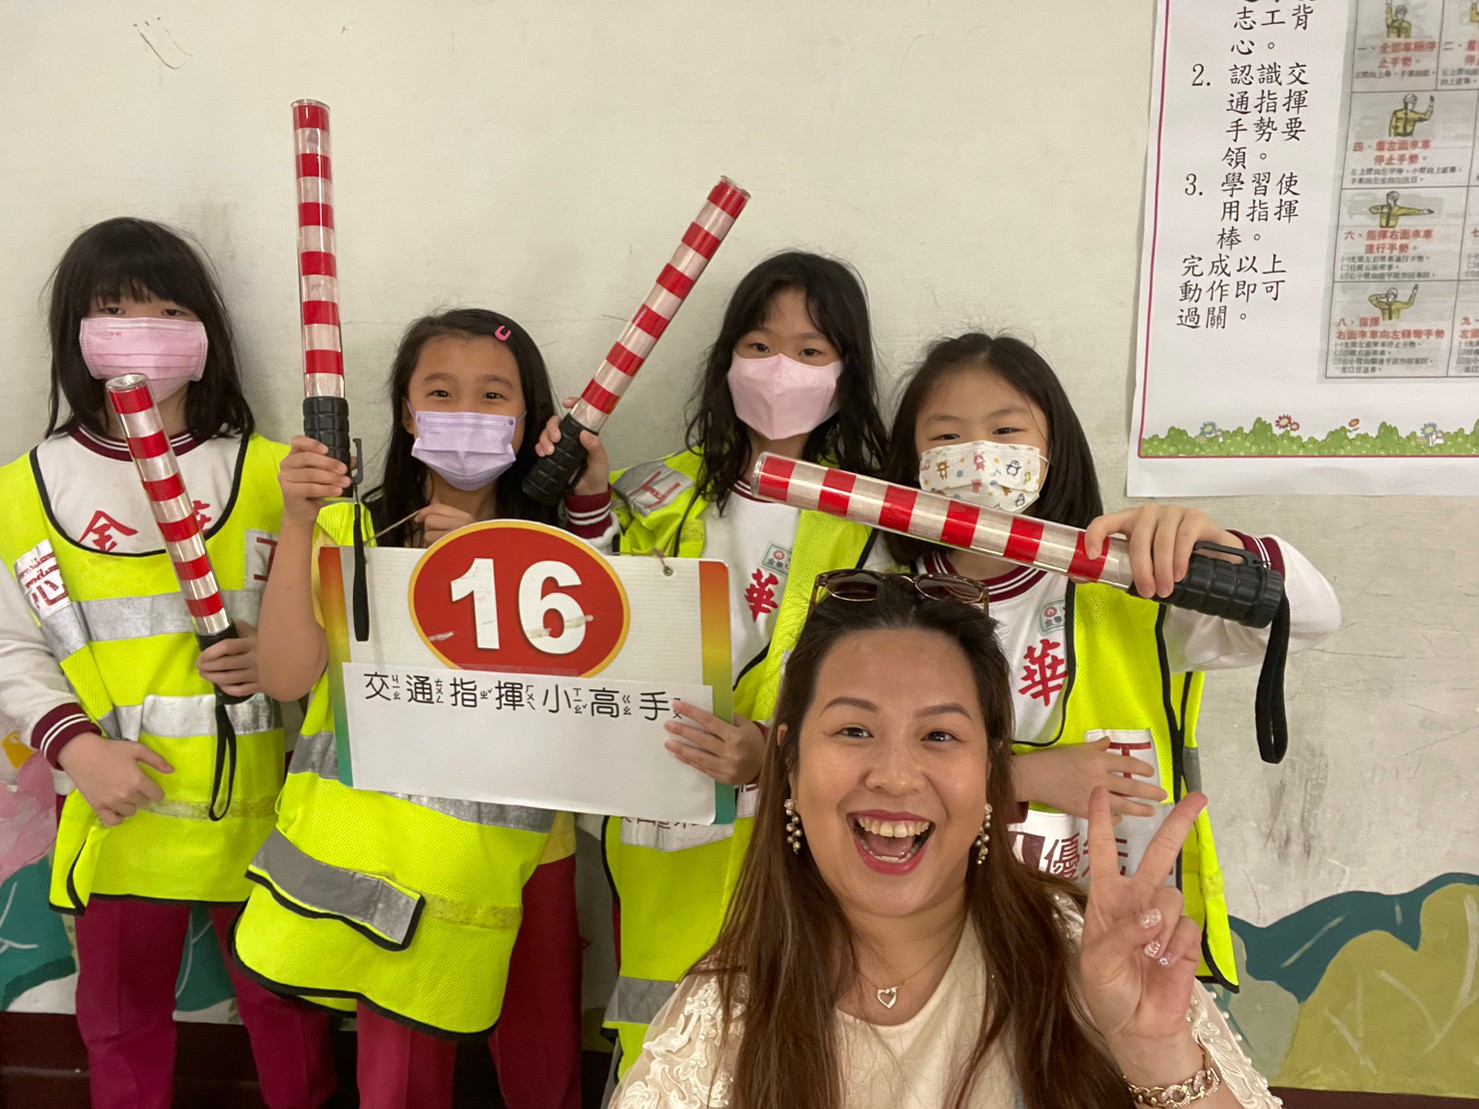 金華國小交通導護志工團與學生互動生活照